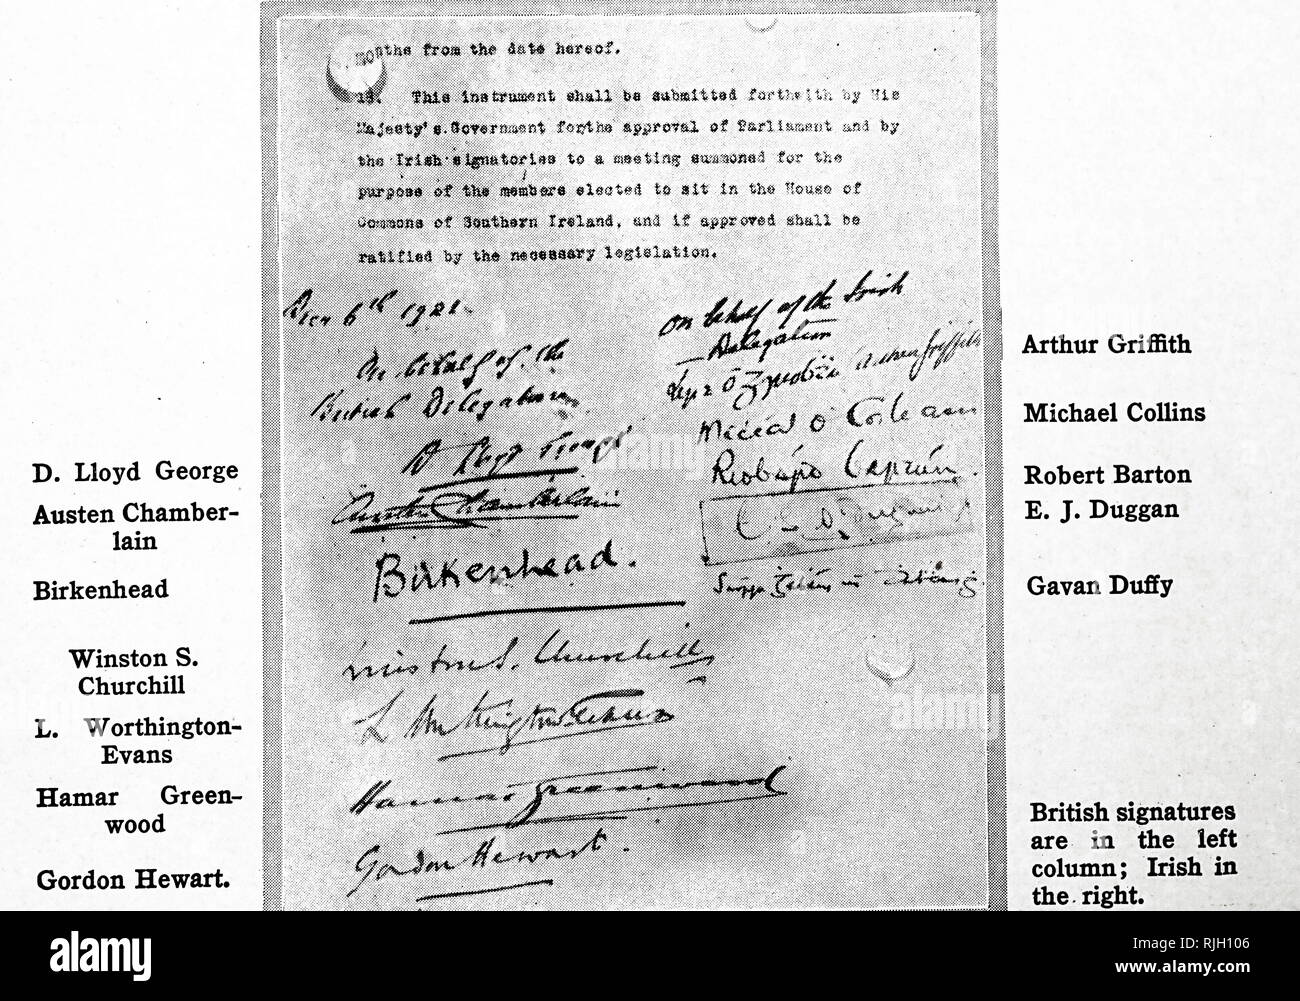 Eine Kopie der unterzeichneten anglo-irischen Vertrag anglo-irischen Vertrag, eine Vereinbarung zwischen der Regierung des Vereinigten Königreichs von Großbritannien und Irland und Vertreter der Irischen Republik, dass die irischen Unabhängigkeitskrieg abgeschlossen. Vom 20. Jahrhundert Stockfoto